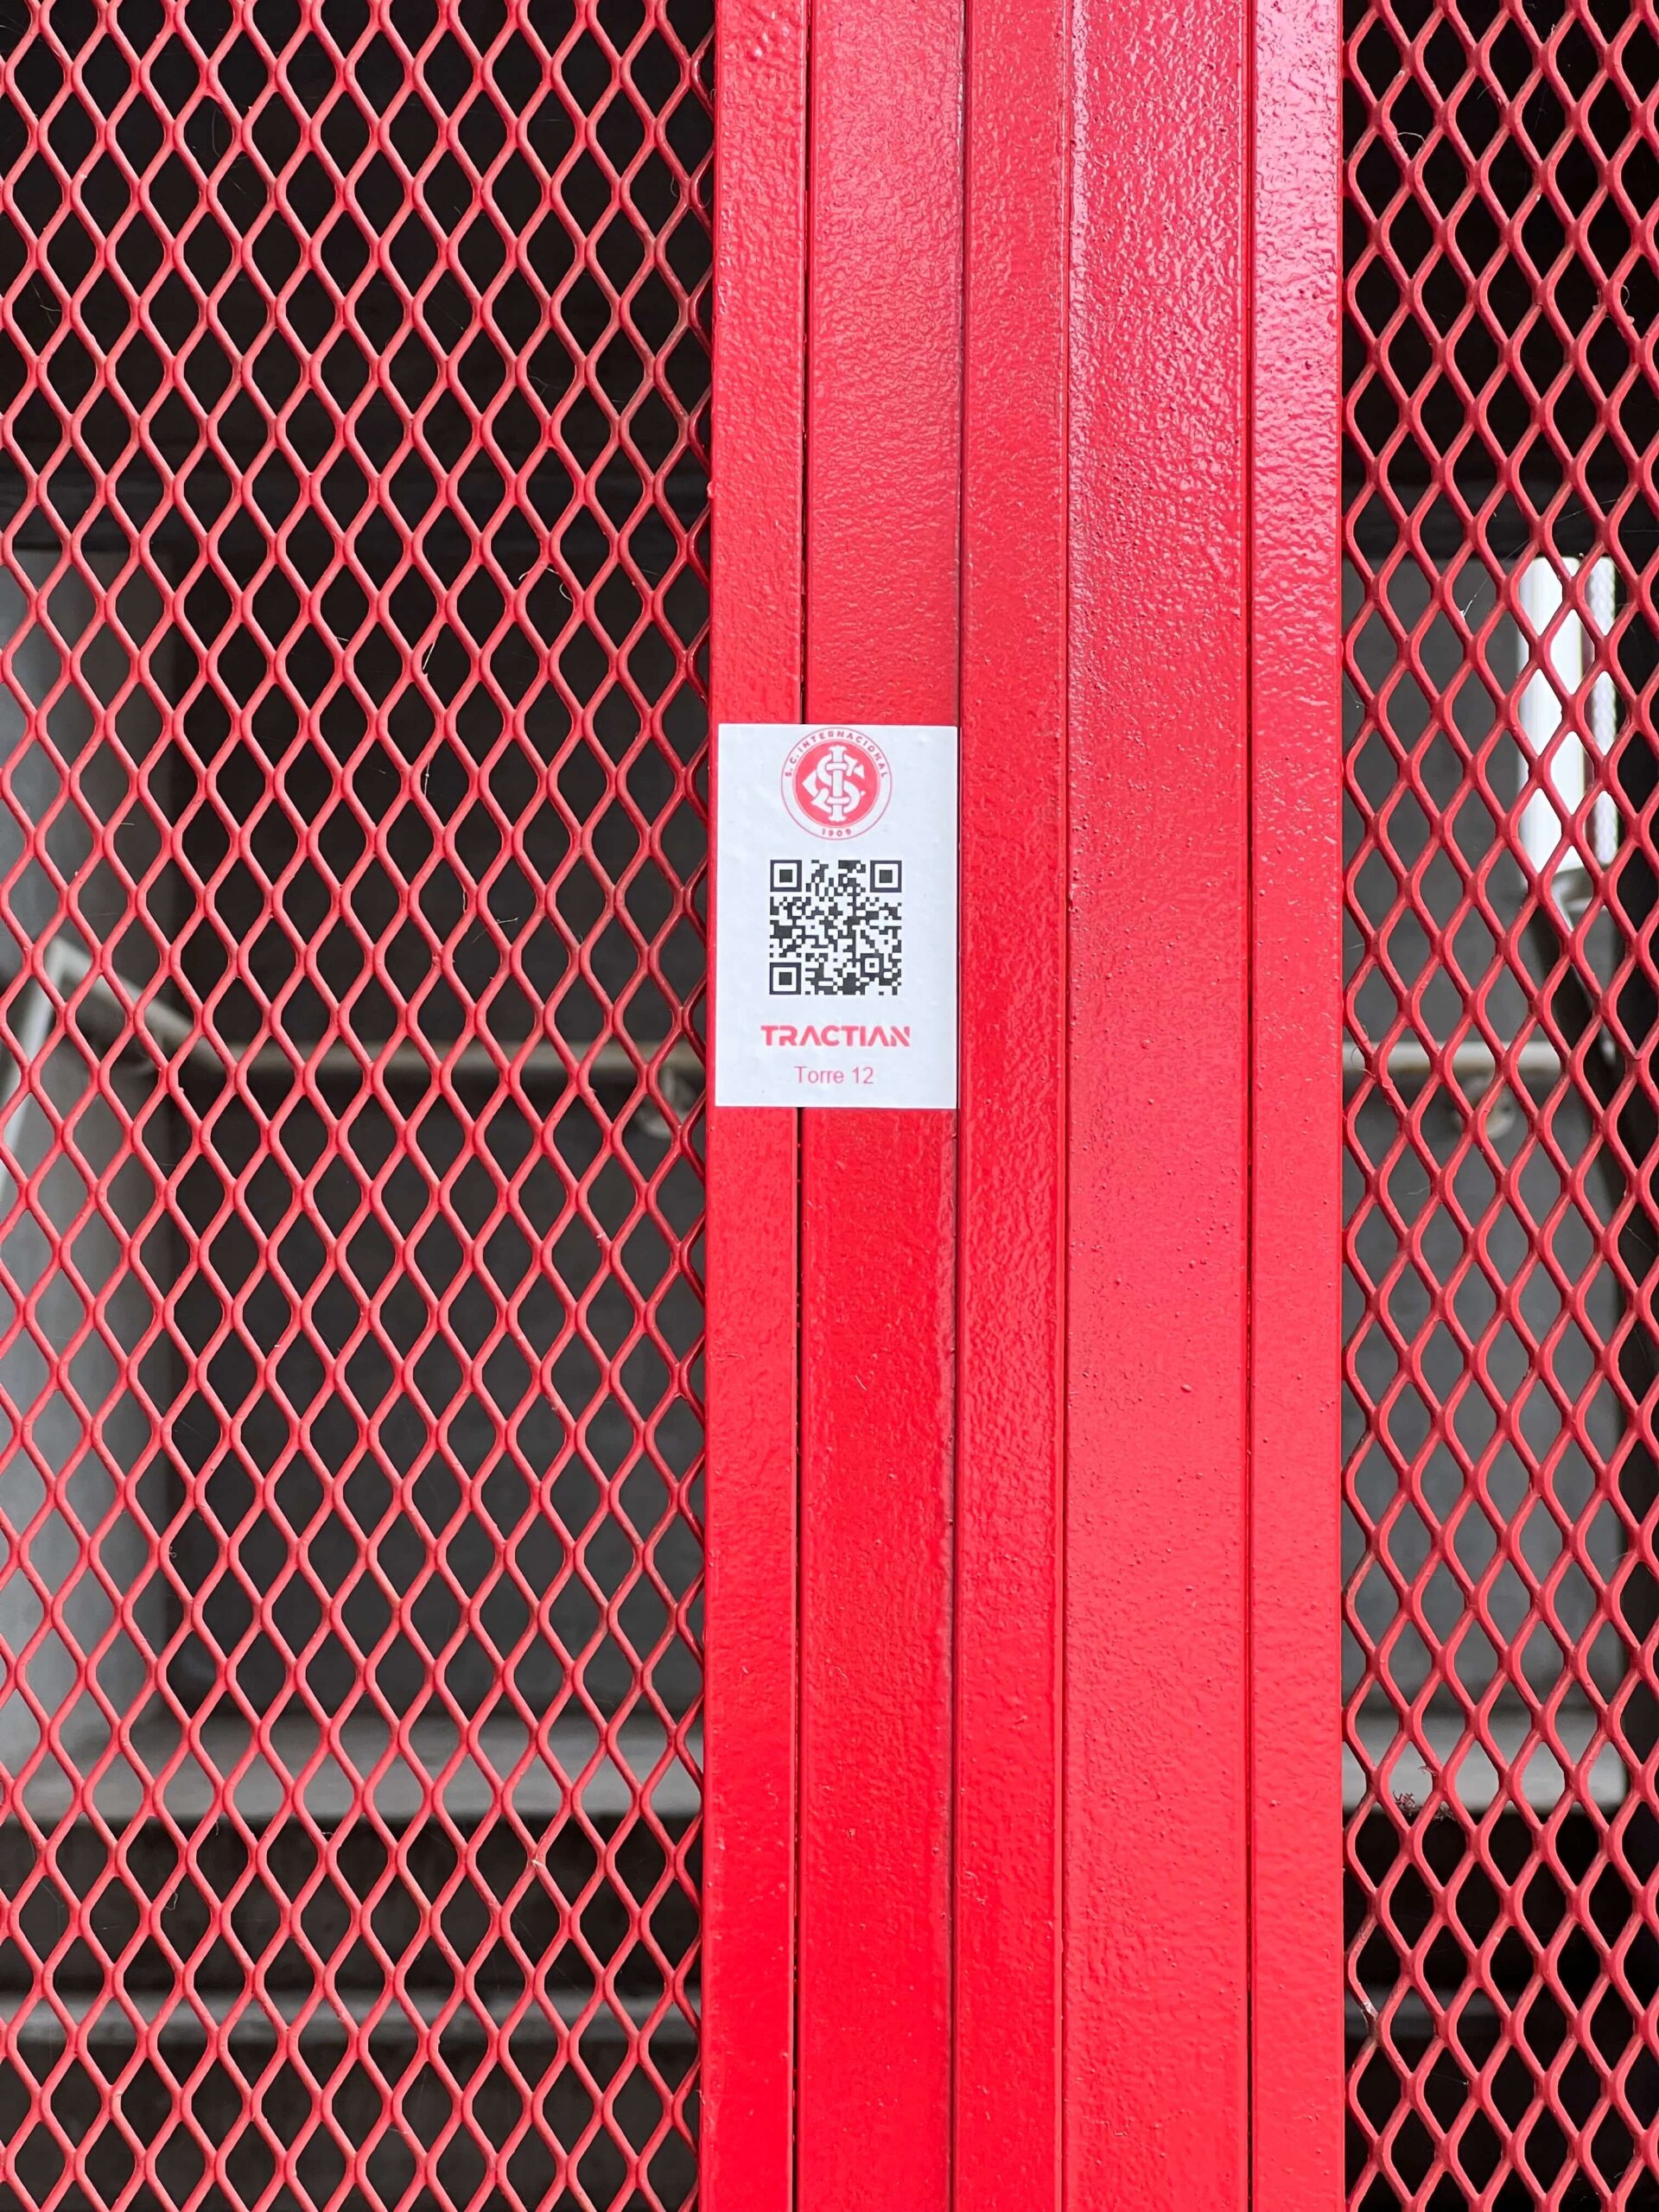 Em uma estrutura de cor vermelha, um QR Code está colado. No adesivo, a marca do Sport Club Internacional, o código QR e a identificação do local.